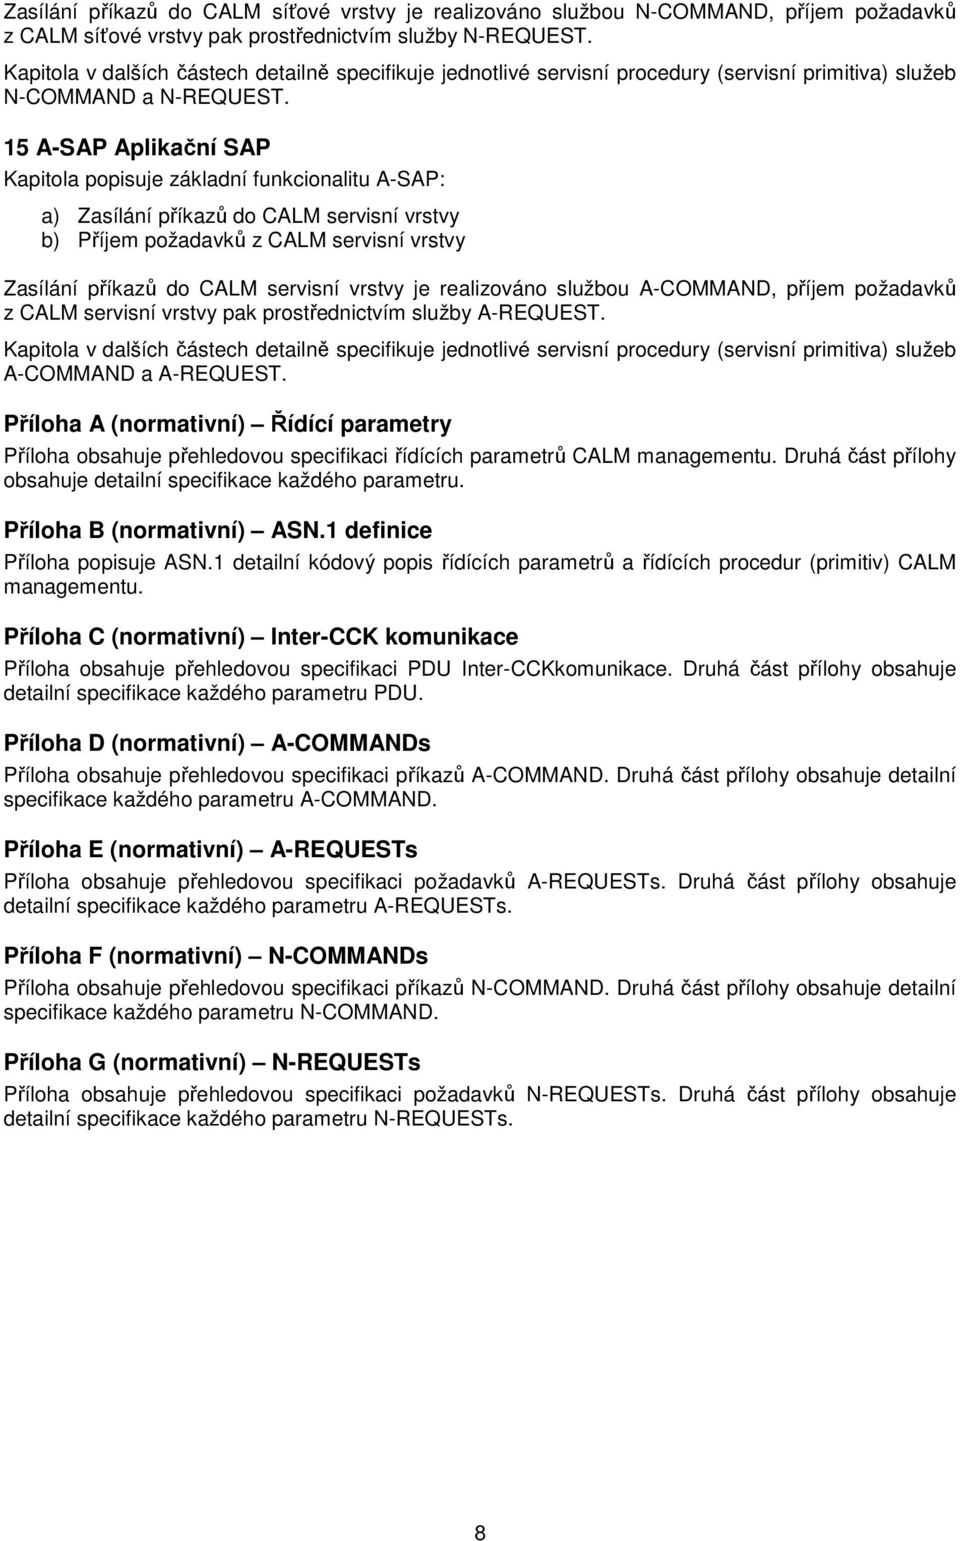 15 A-SAP Aplikační SAP Kapitola popisuje základní funkcionalitu A-SAP: a) Zasílání příkazů do CALM servisní vrstvy b) Příjem požadavků z CALM servisní vrstvy Zasílání příkazů do CALM servisní vrstvy